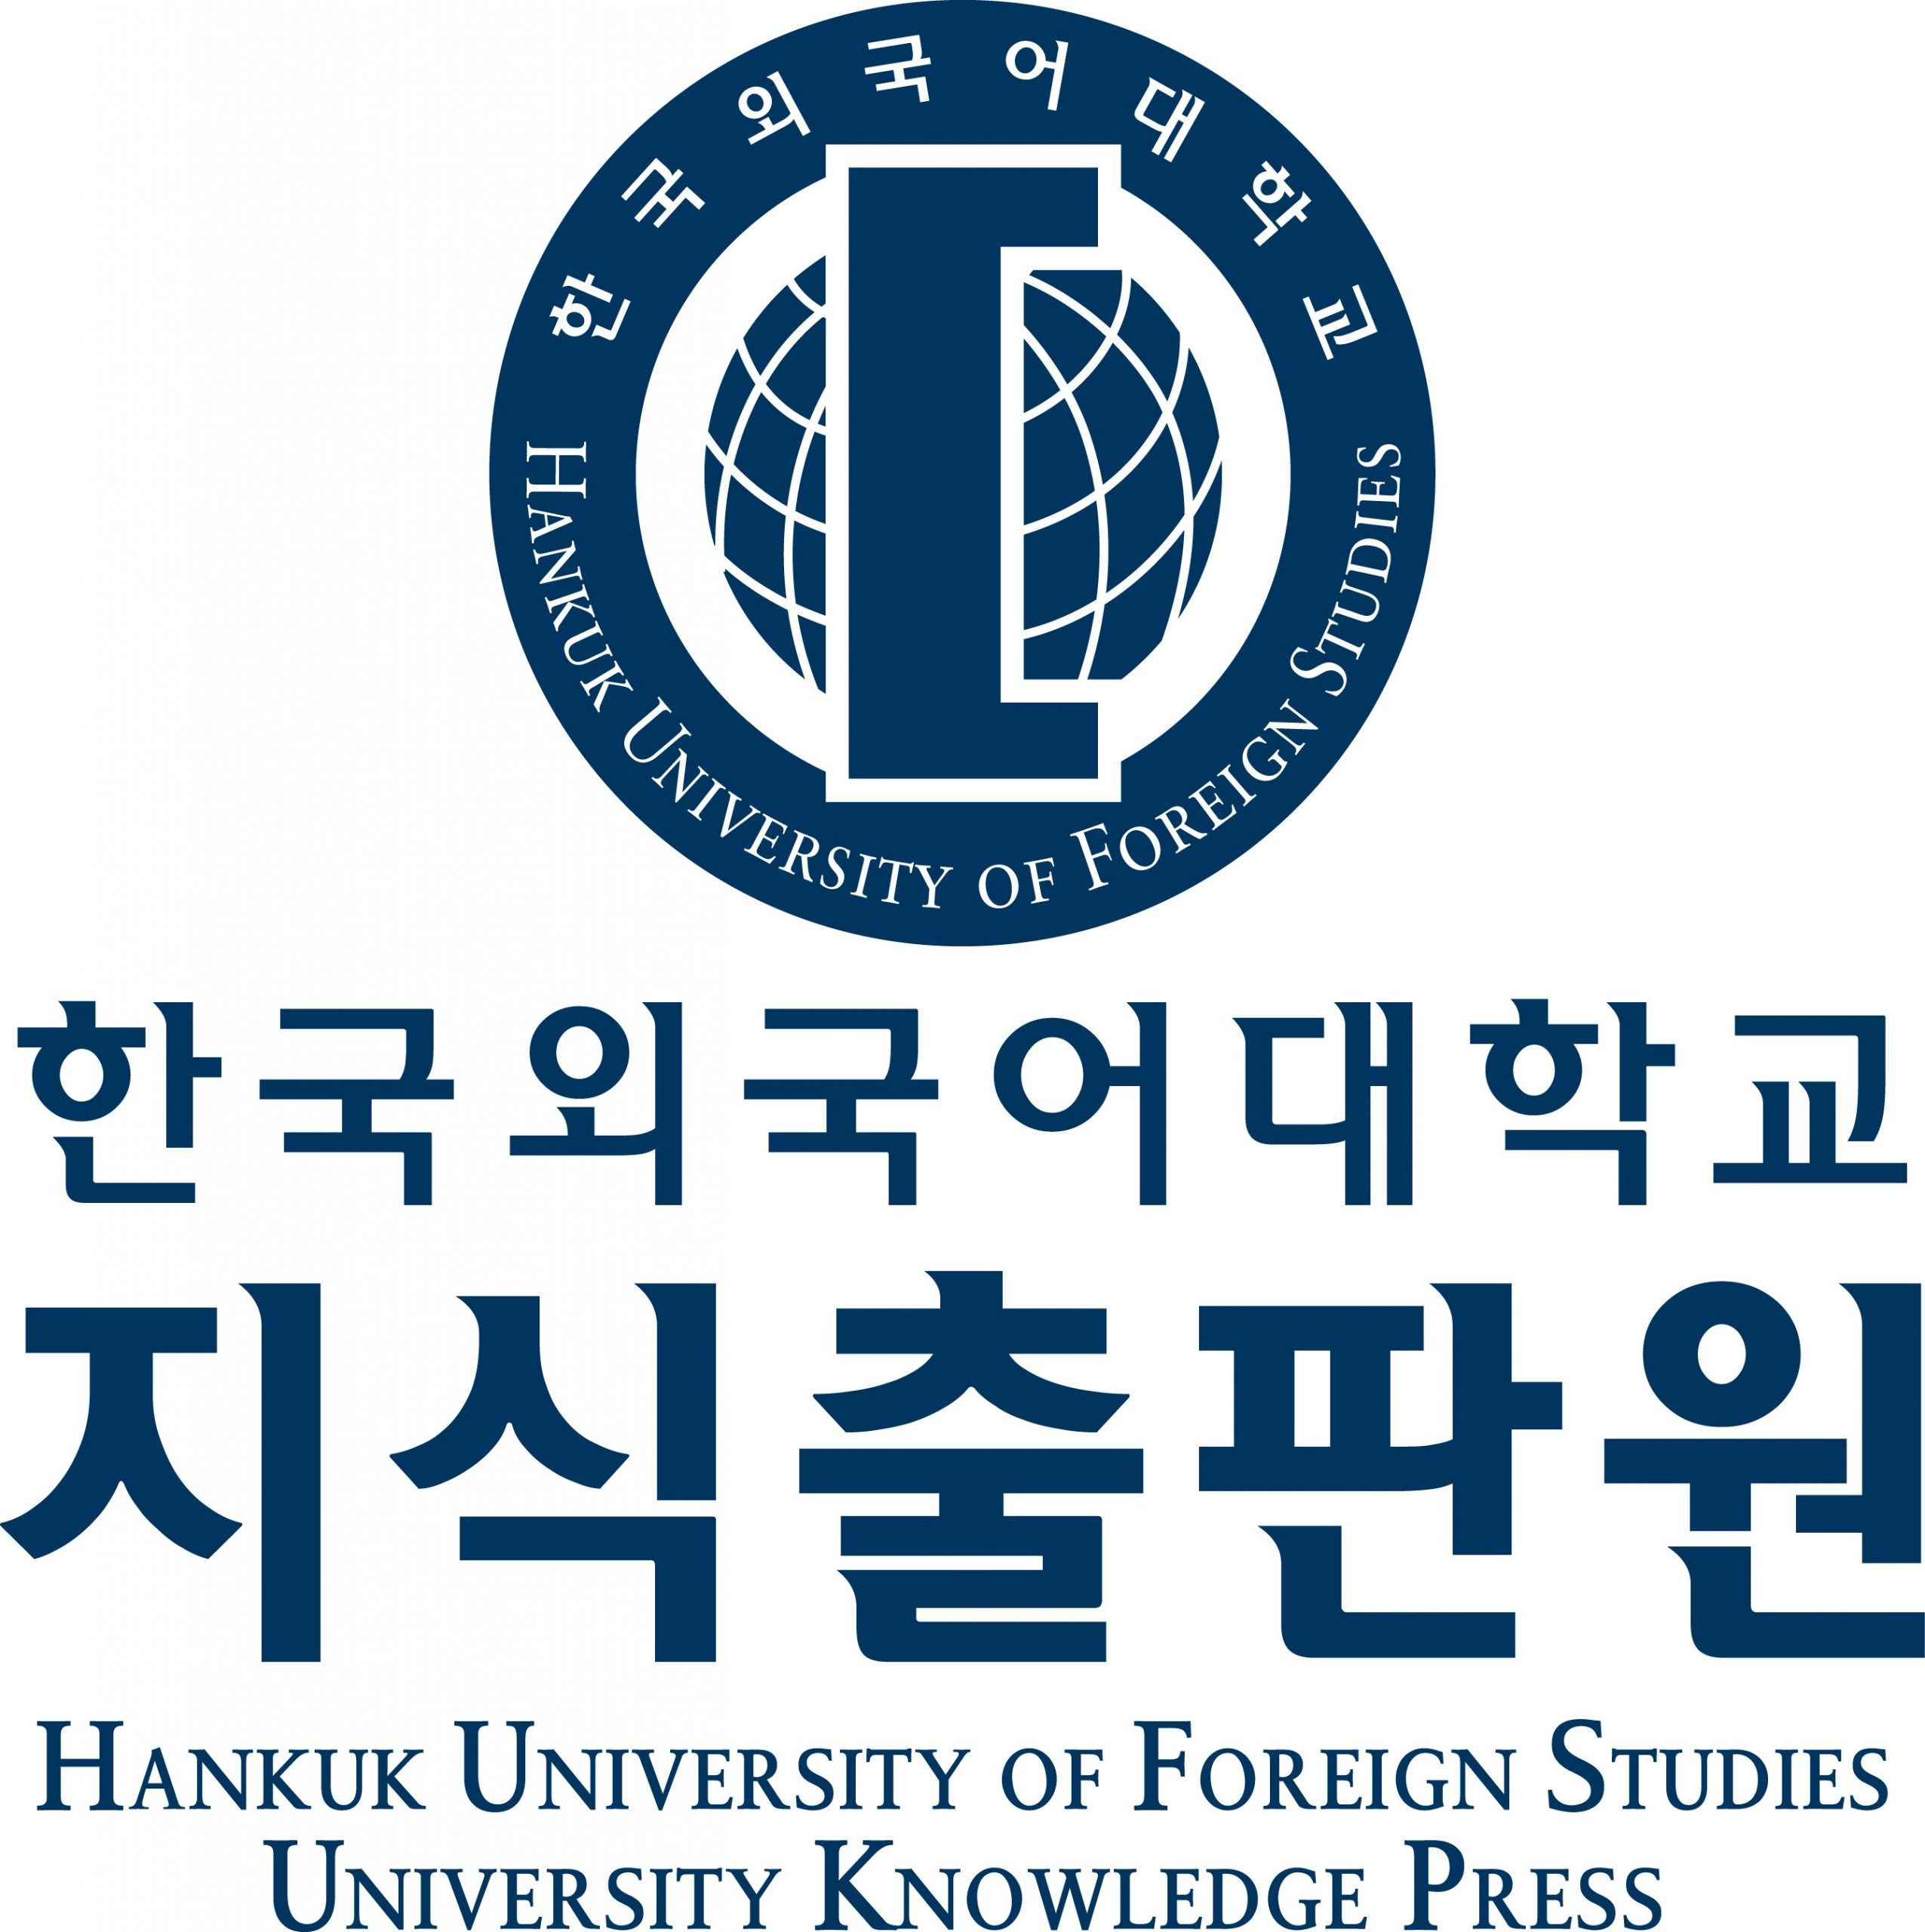 جامعة هانكوك، كوريا